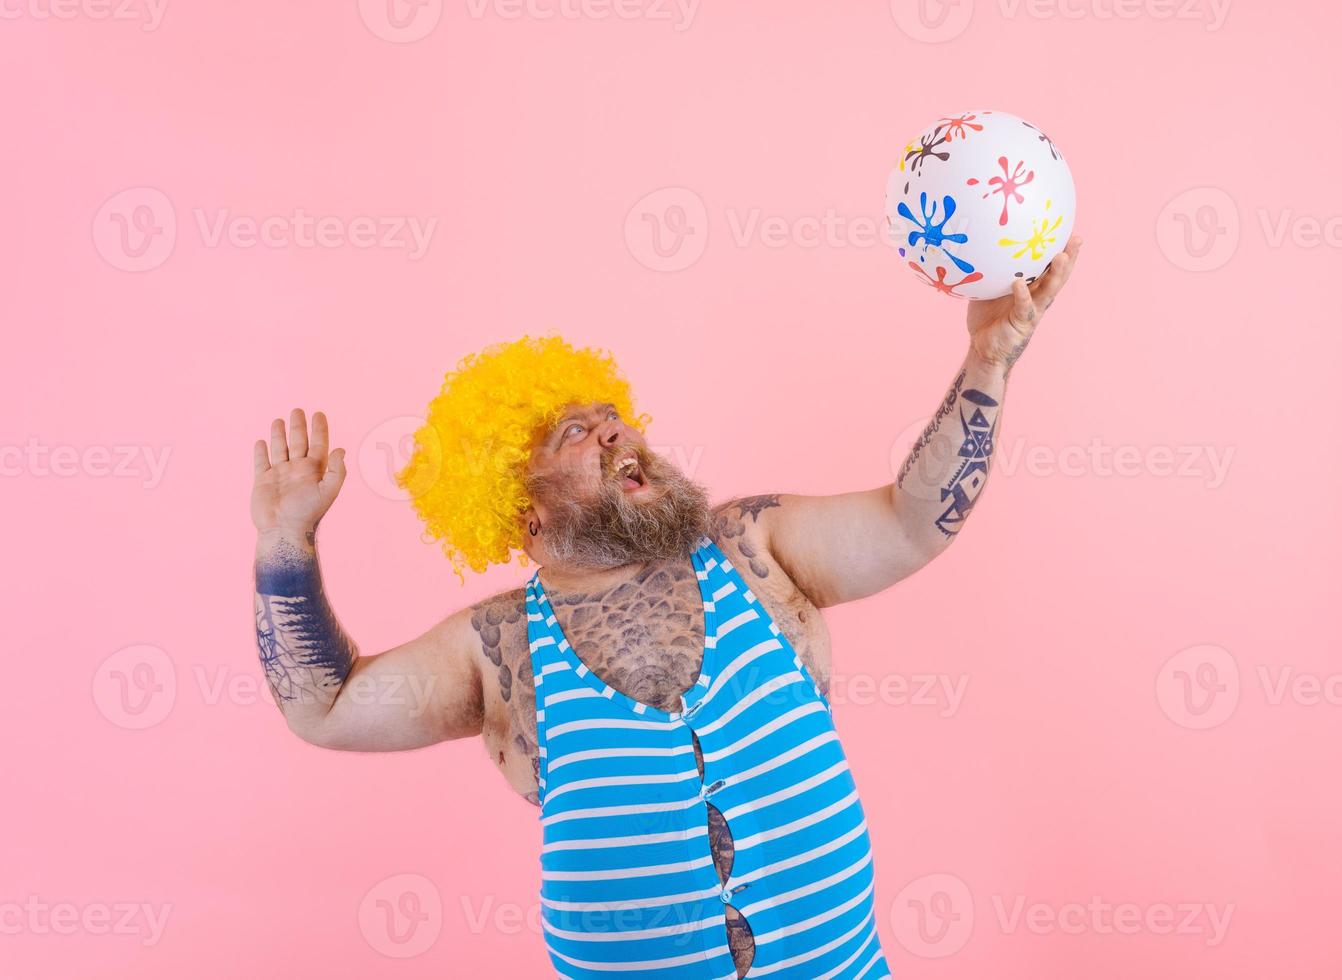 grasa hombre con barba y peluca jugar con el pelota foto